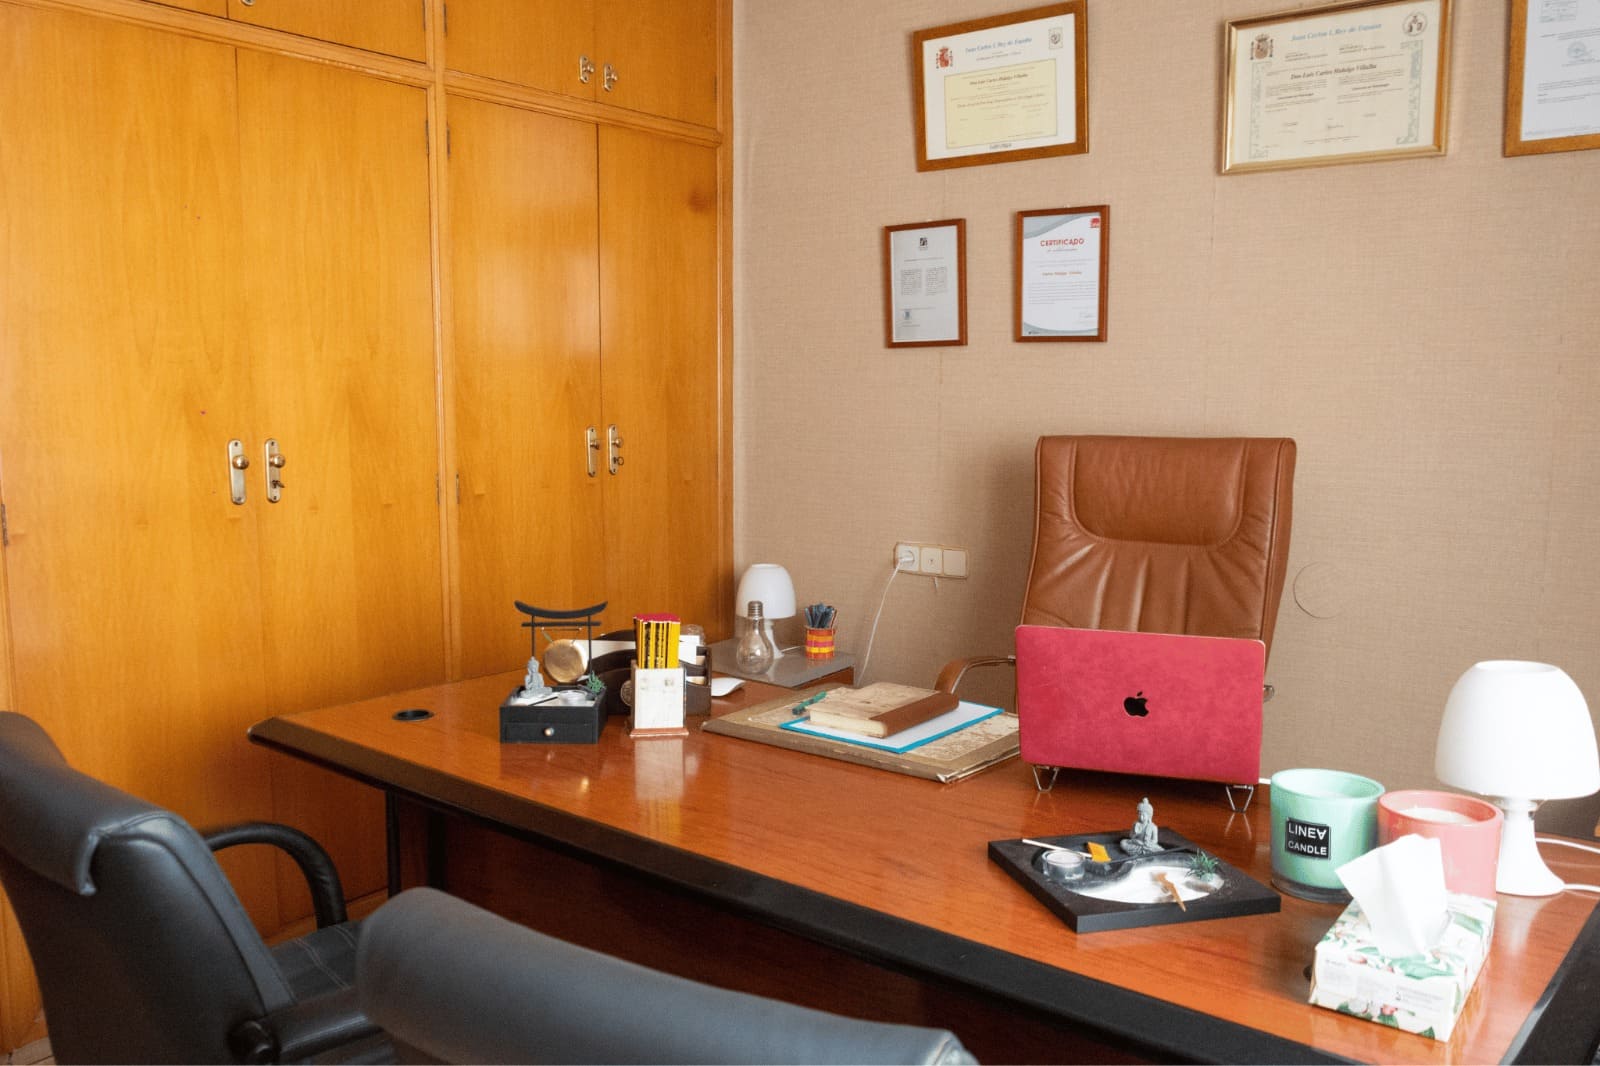 Despacho de psicología de Carlos Hidalgo, psicólogo profesional, ubicado Castellón, perfecto para realizar sesiones de terapia.